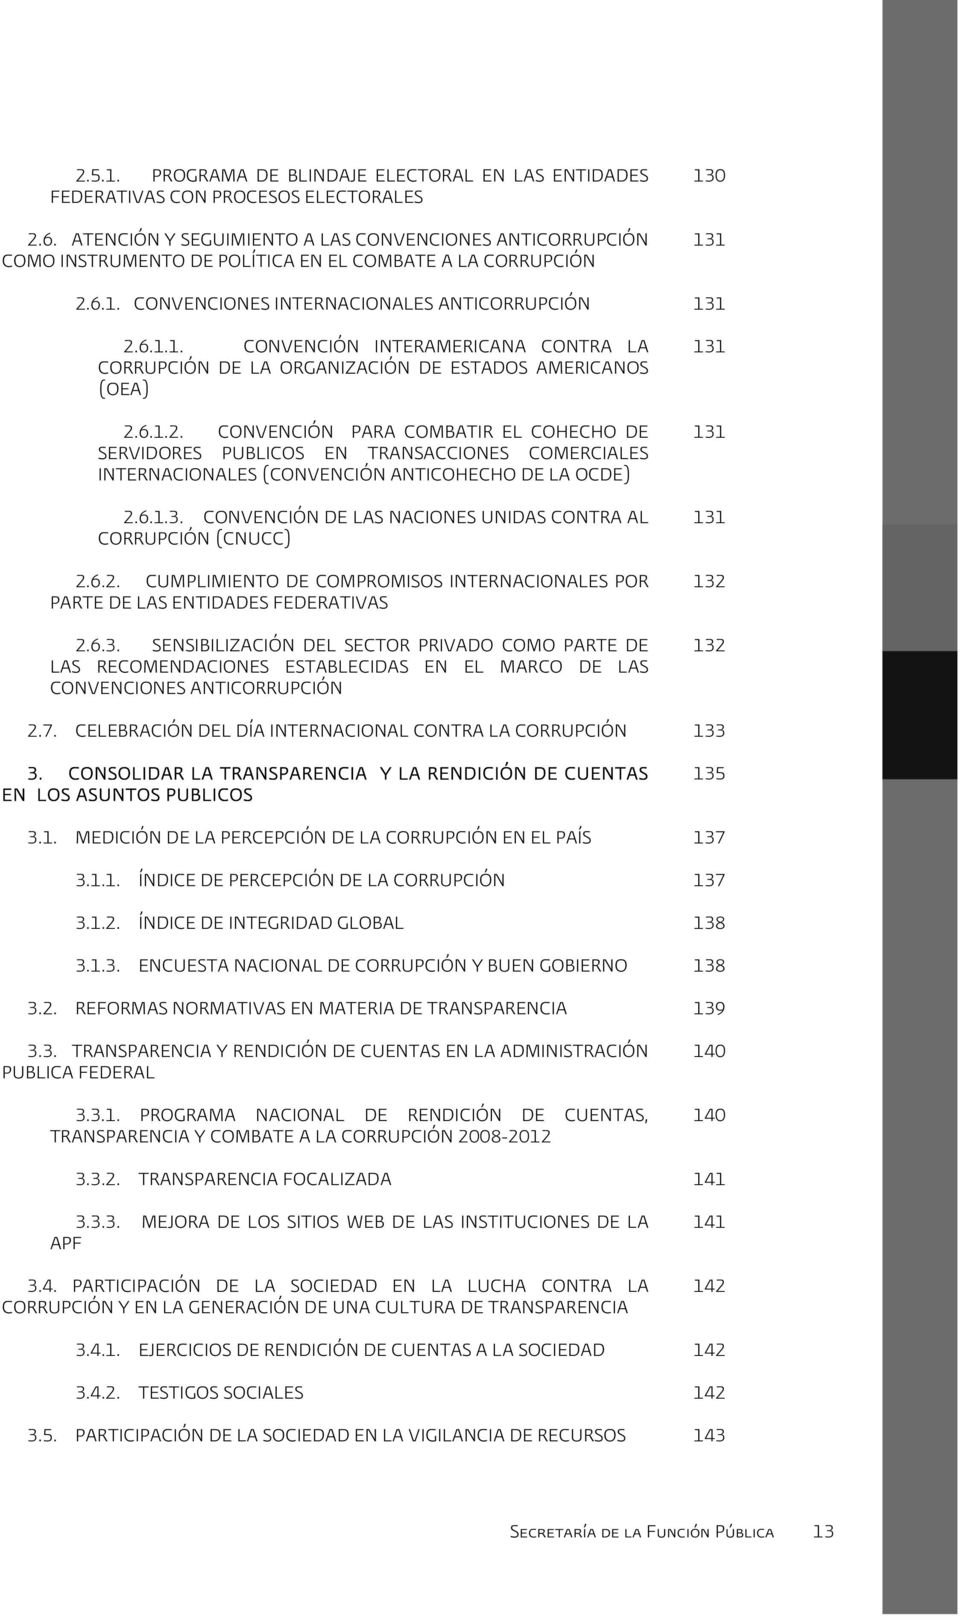 0 131 2.6.1. CONVENCIONES INTERNACIONALES ANTICORRUPCIÓN 131 2.6.1.1. CONVENCIÓN INTERAMERICANA CONTRA LA CORRUPCIÓN DE LA ORGANIZACIÓN DE ESTADOS AMERICANOS (OEA) 2.6.1.2. CONVENCIÓN PARA COMBATIR EL COHECHO DE SERVIDORES PÚBLICOS EN TRANSACCIONES COMERCIALES INTERNACIONALES (CONVENCIÓN ANTICOHECHO DE LA OCDE) 2.